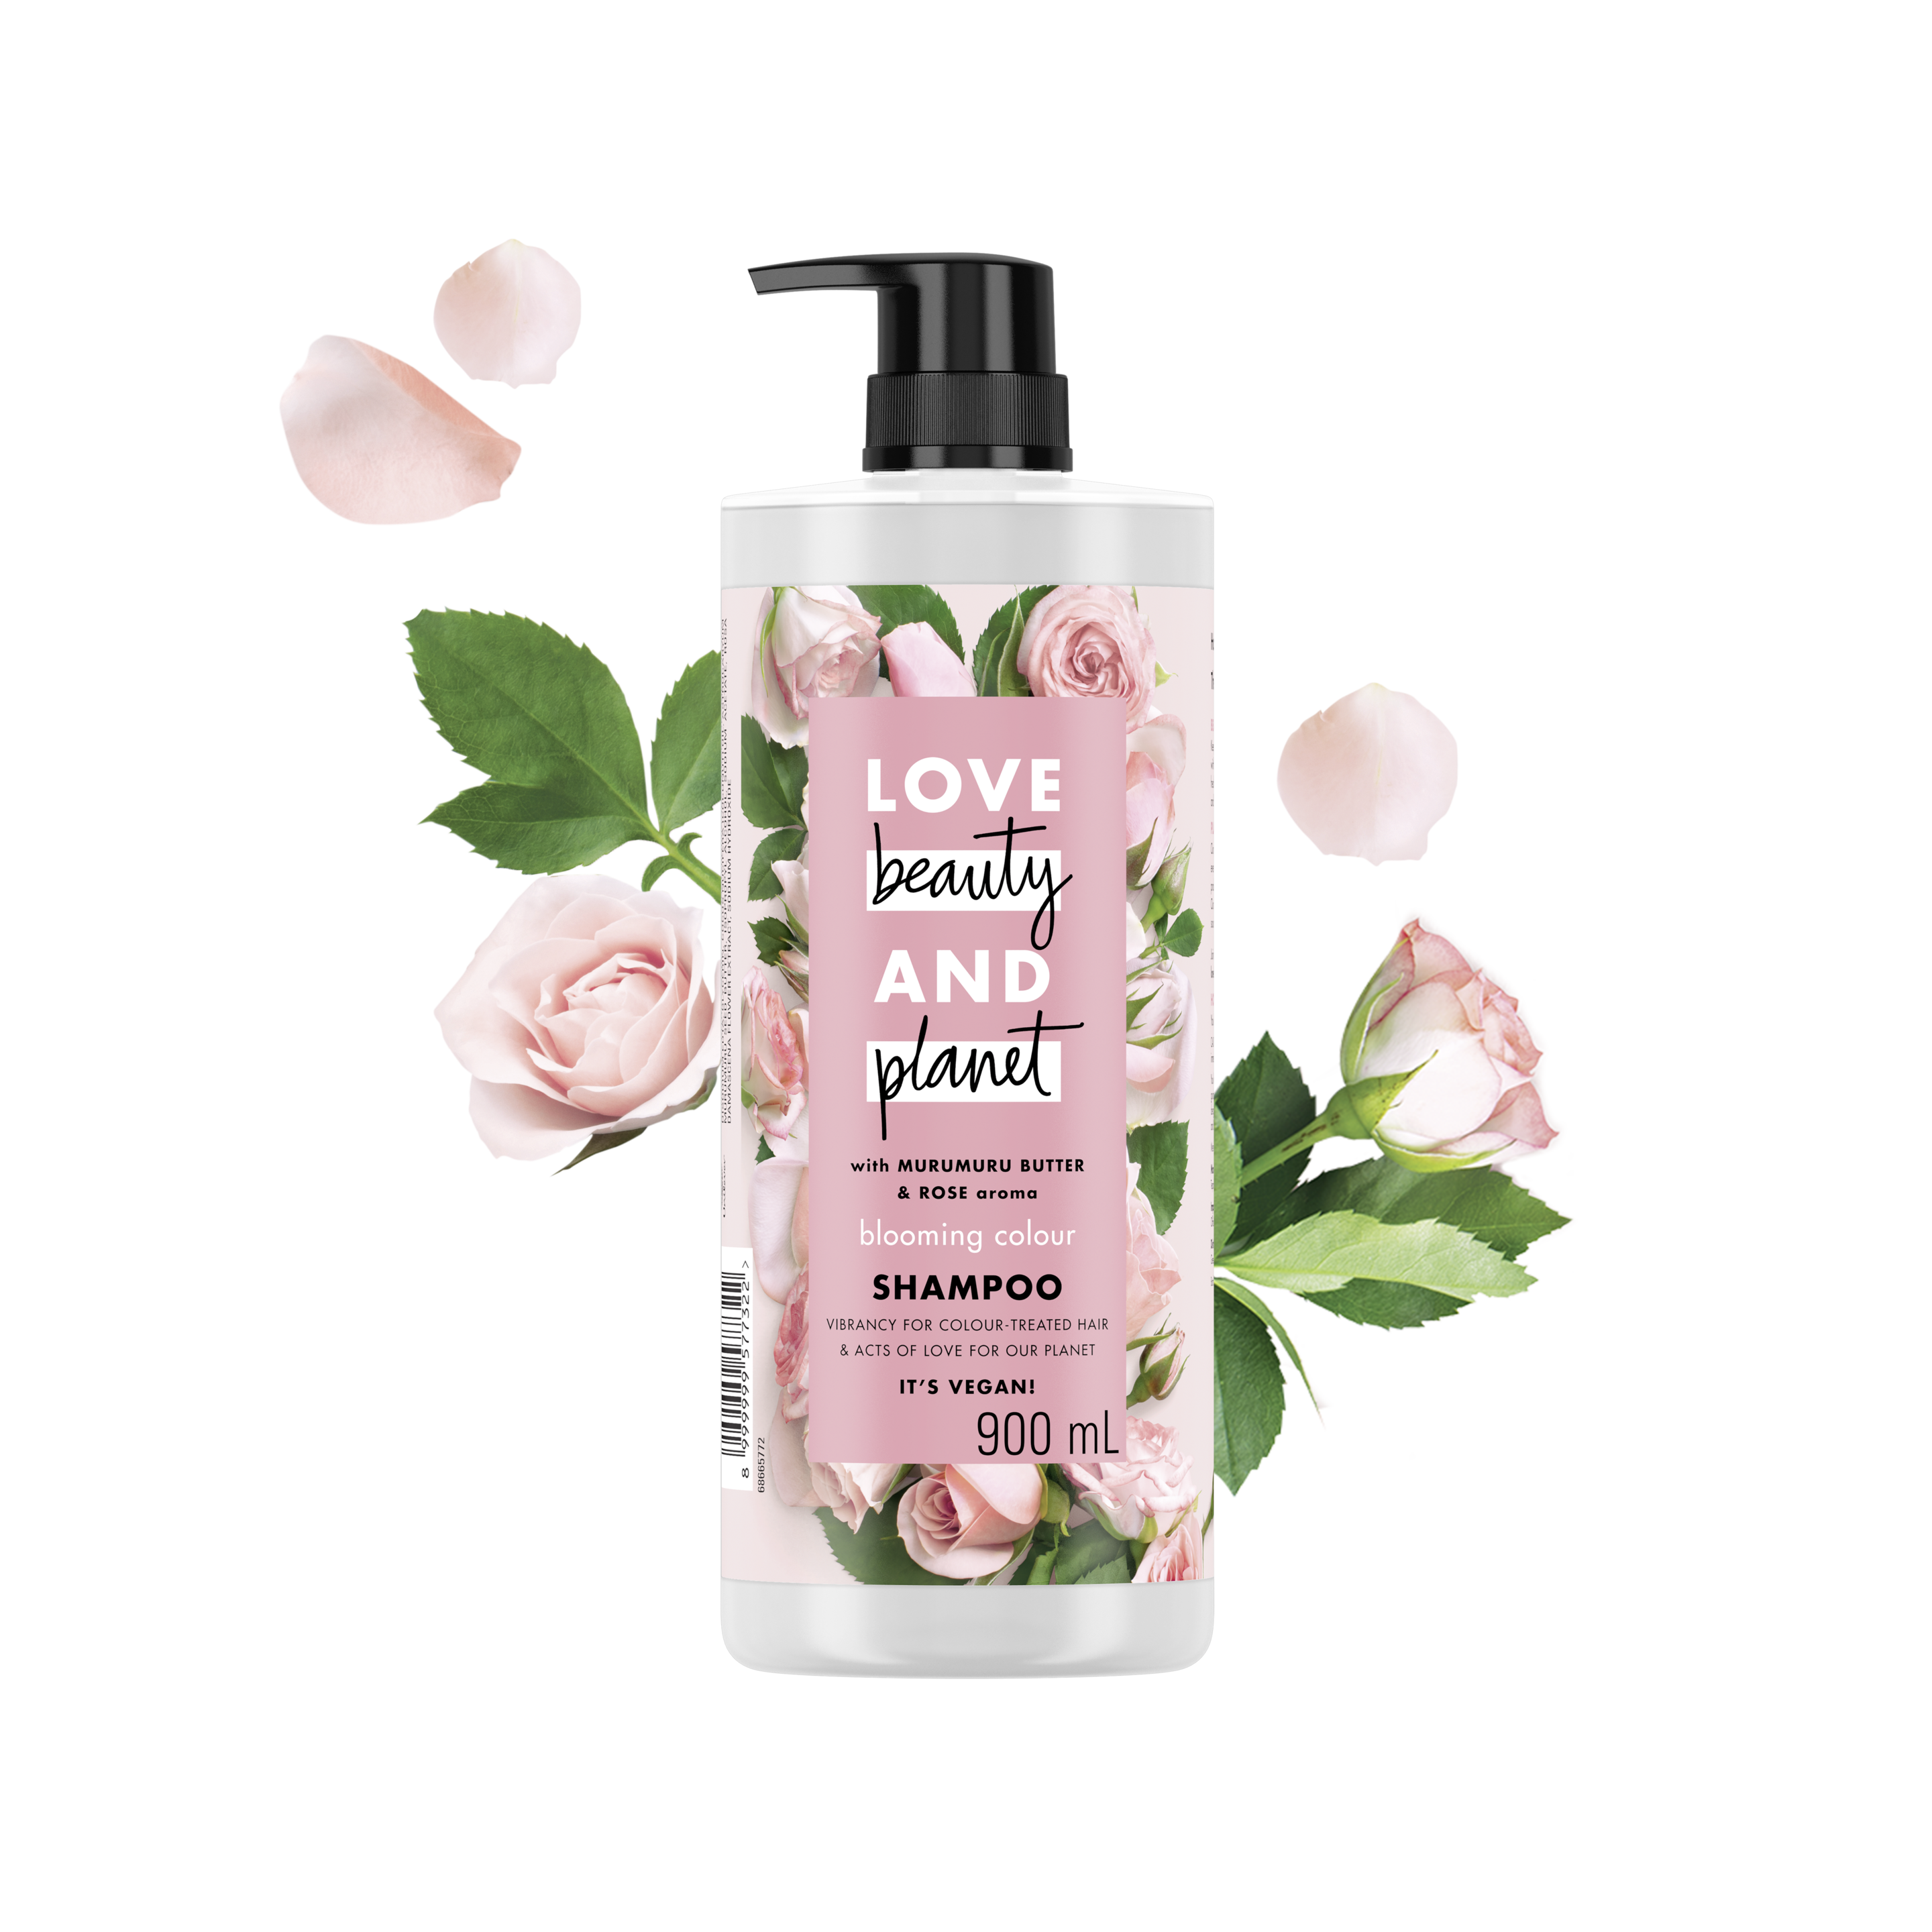 Tampak depan kemasan Love Beauty and Planet Murumuru Butter & Rose Shampoo ukuran 900 ml